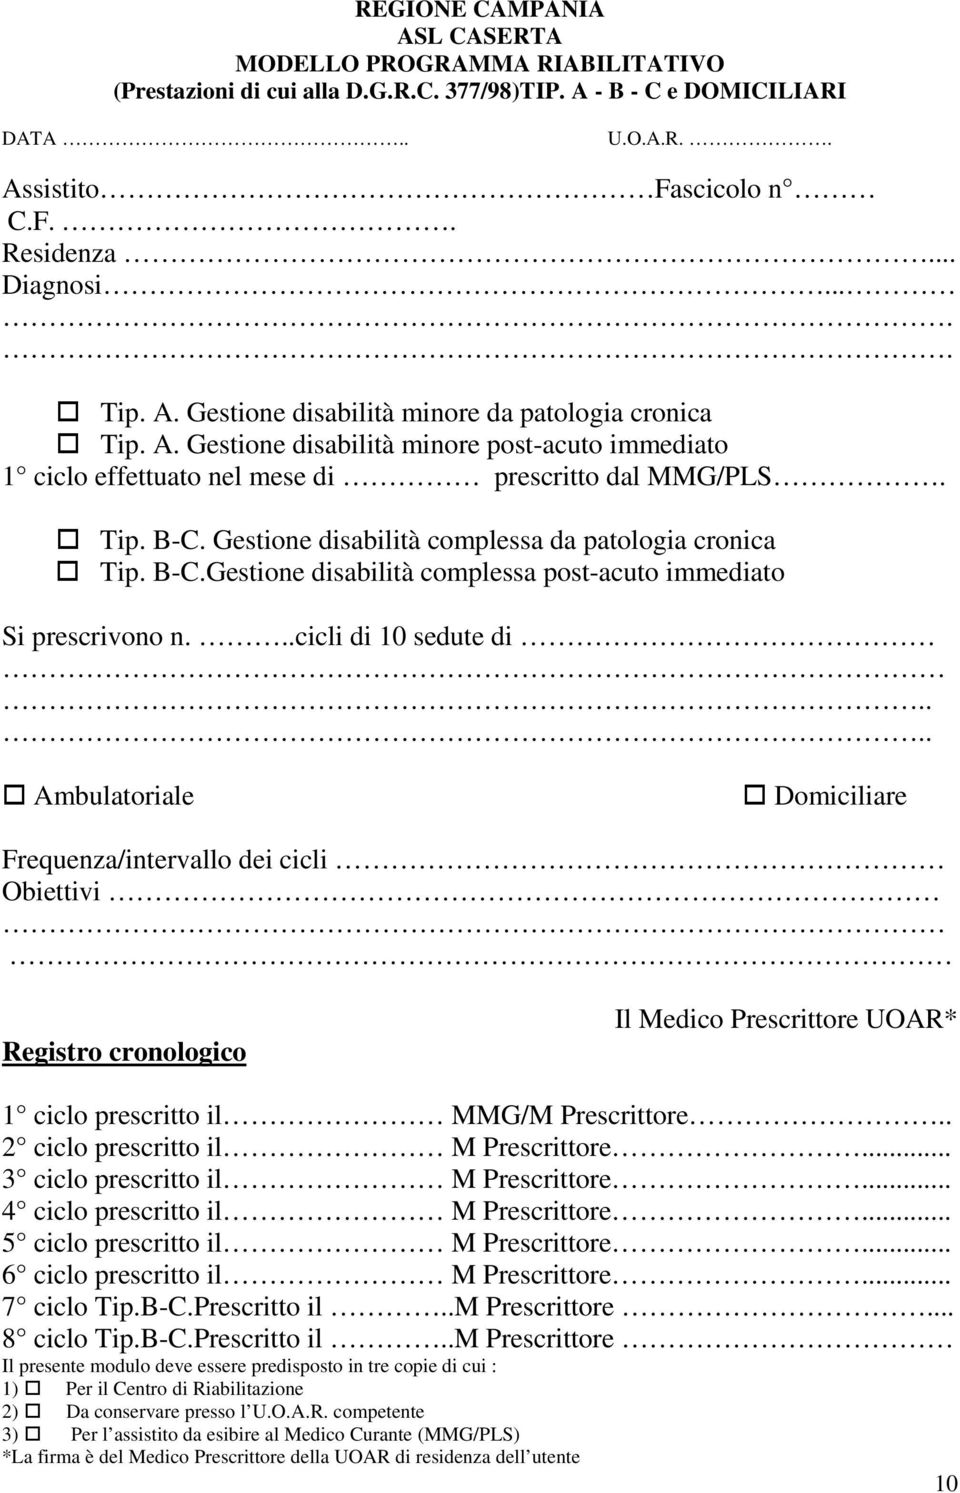 Gestione disabilità complessa da patologia cronica Tip. B-C.Gestione disabilità complessa post-acuto immediato Si prescrivono n...cicli di 10 sedute di.